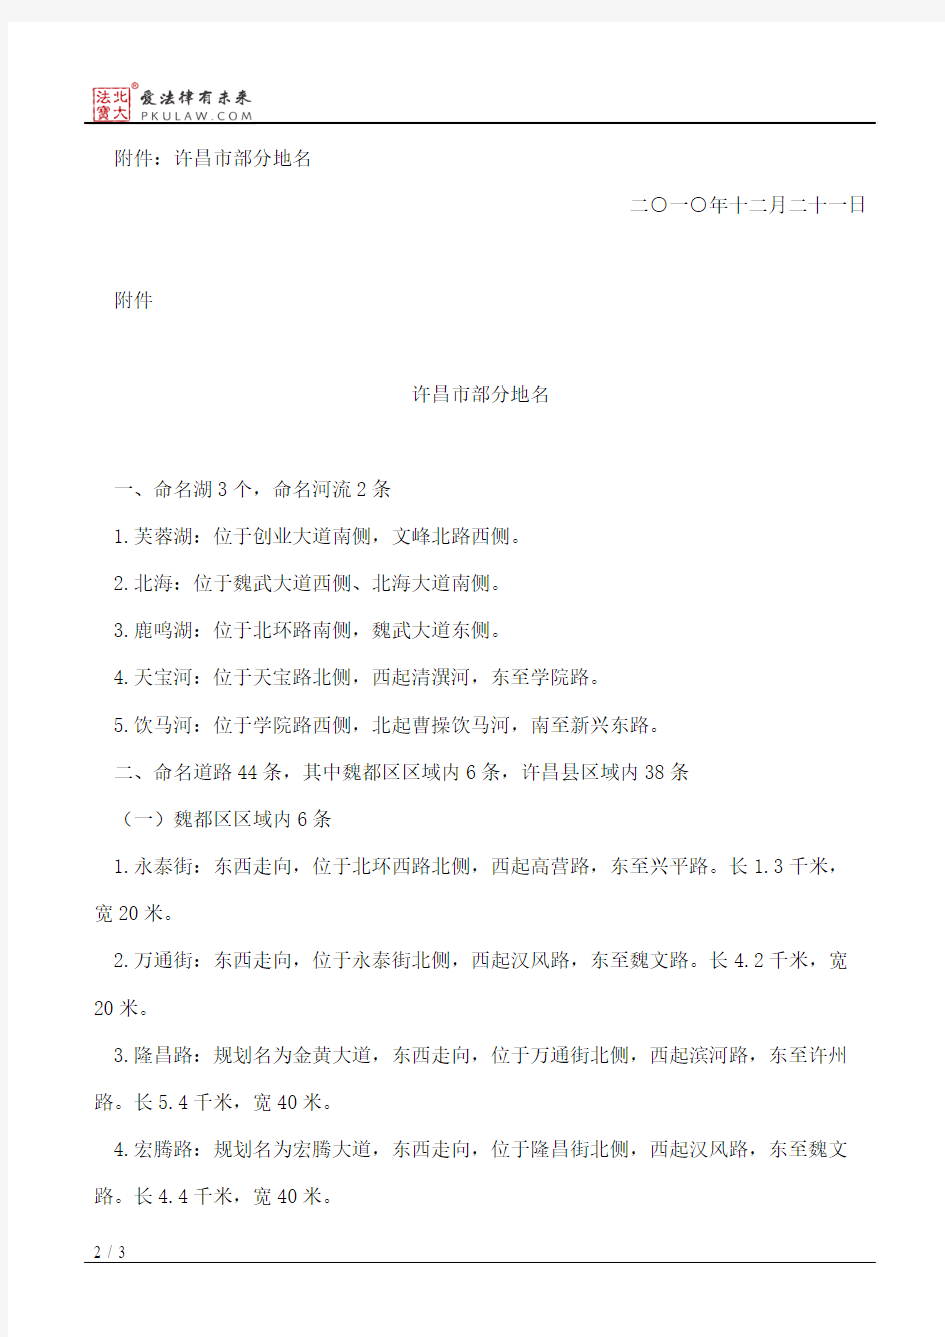 许昌市人民政府关于部分道路小区等命名更名的通知